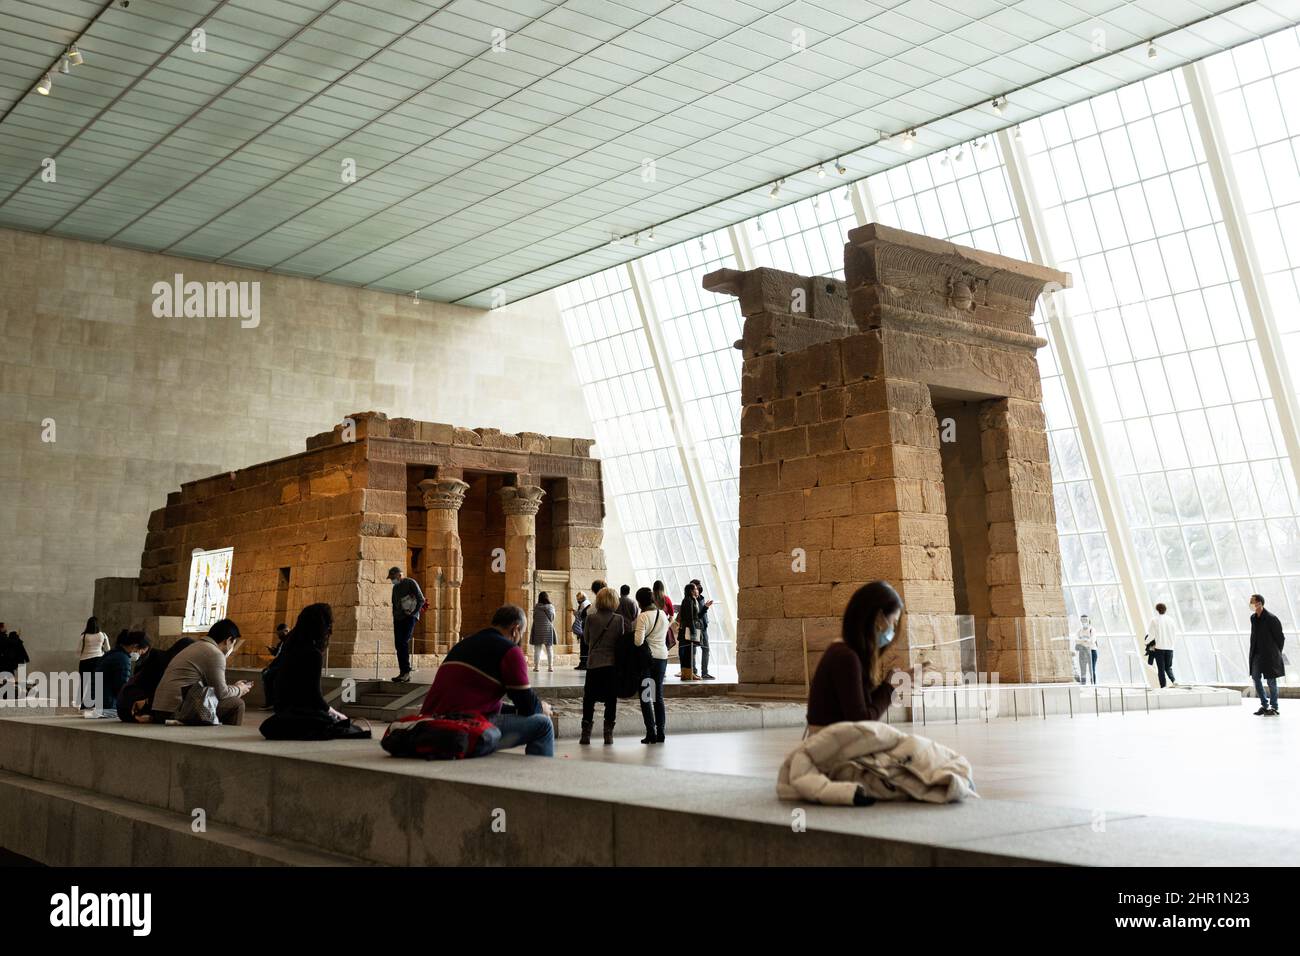 Il Tempio di Dendur al Metropolitan Museum of Art di New York City, USA. Questo tempio egiziano risale al 15 a.C. ed è stato costruito dai Romani. Foto Stock